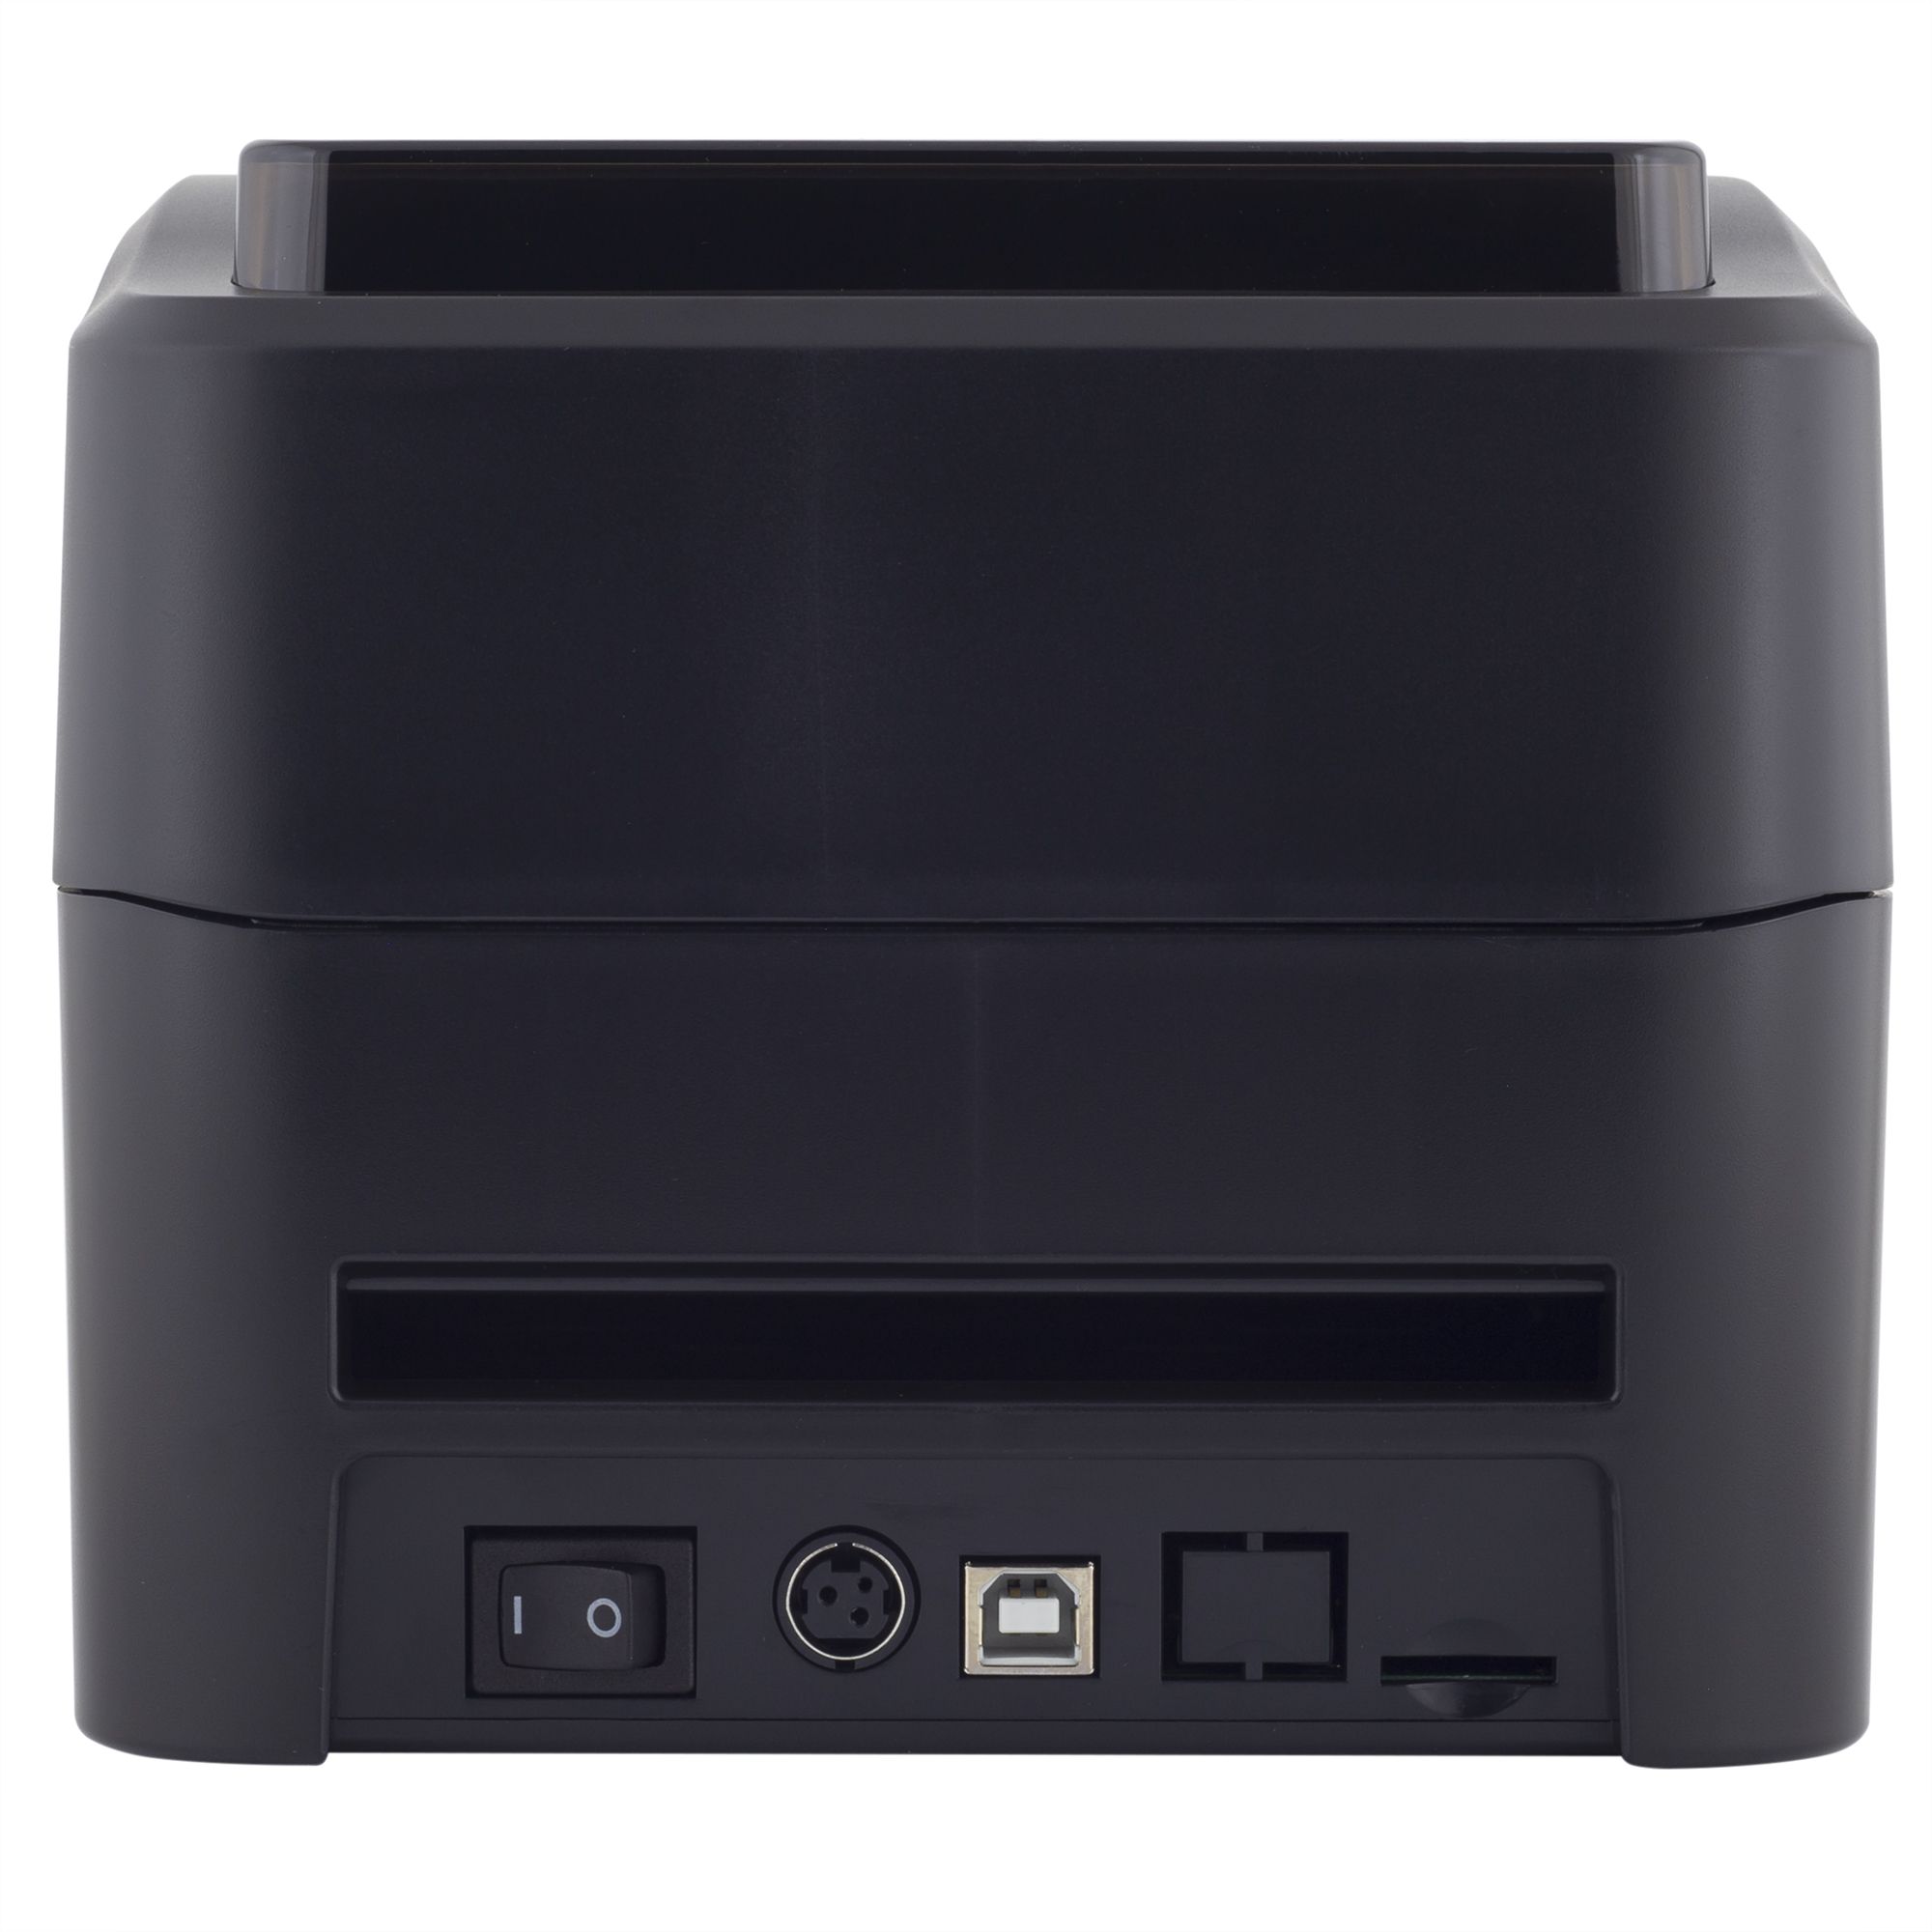 Этикеток xprinter xp 420b. Xprinter 420b. Xprinter XP-420b. Принтер этикеток POSCENTER PC-100 UE (USB+Ethernet) черный. Термальный принтер.